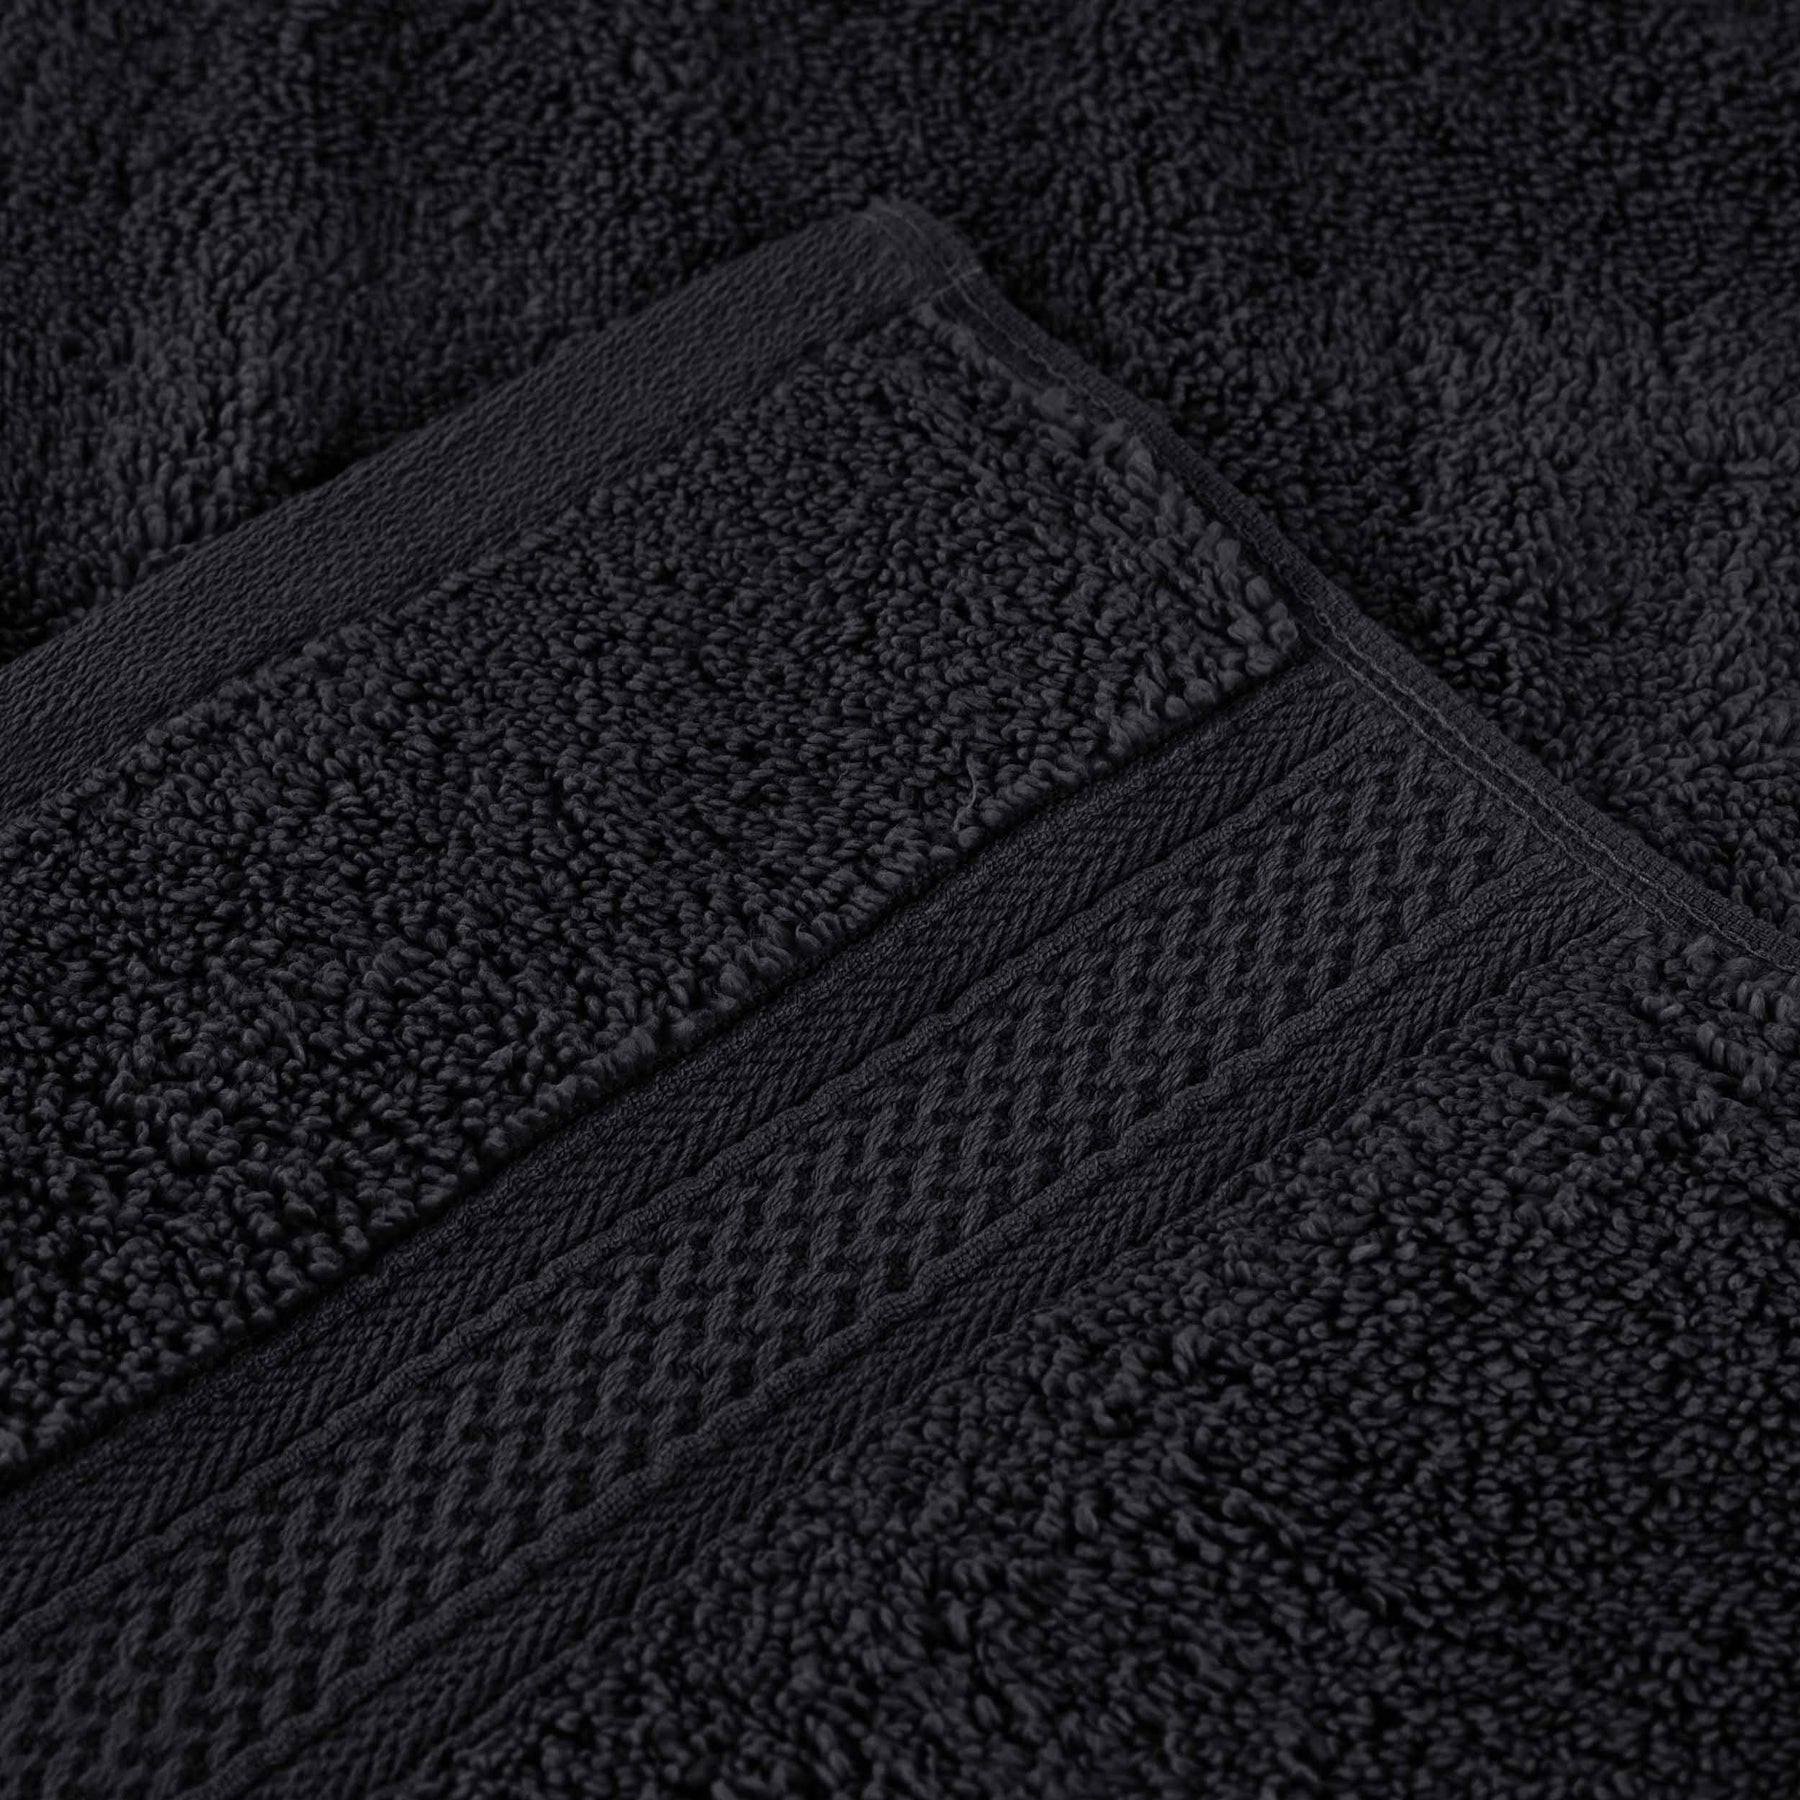 Chevron Zero Twist Cotton Solid and Jacquard - Black